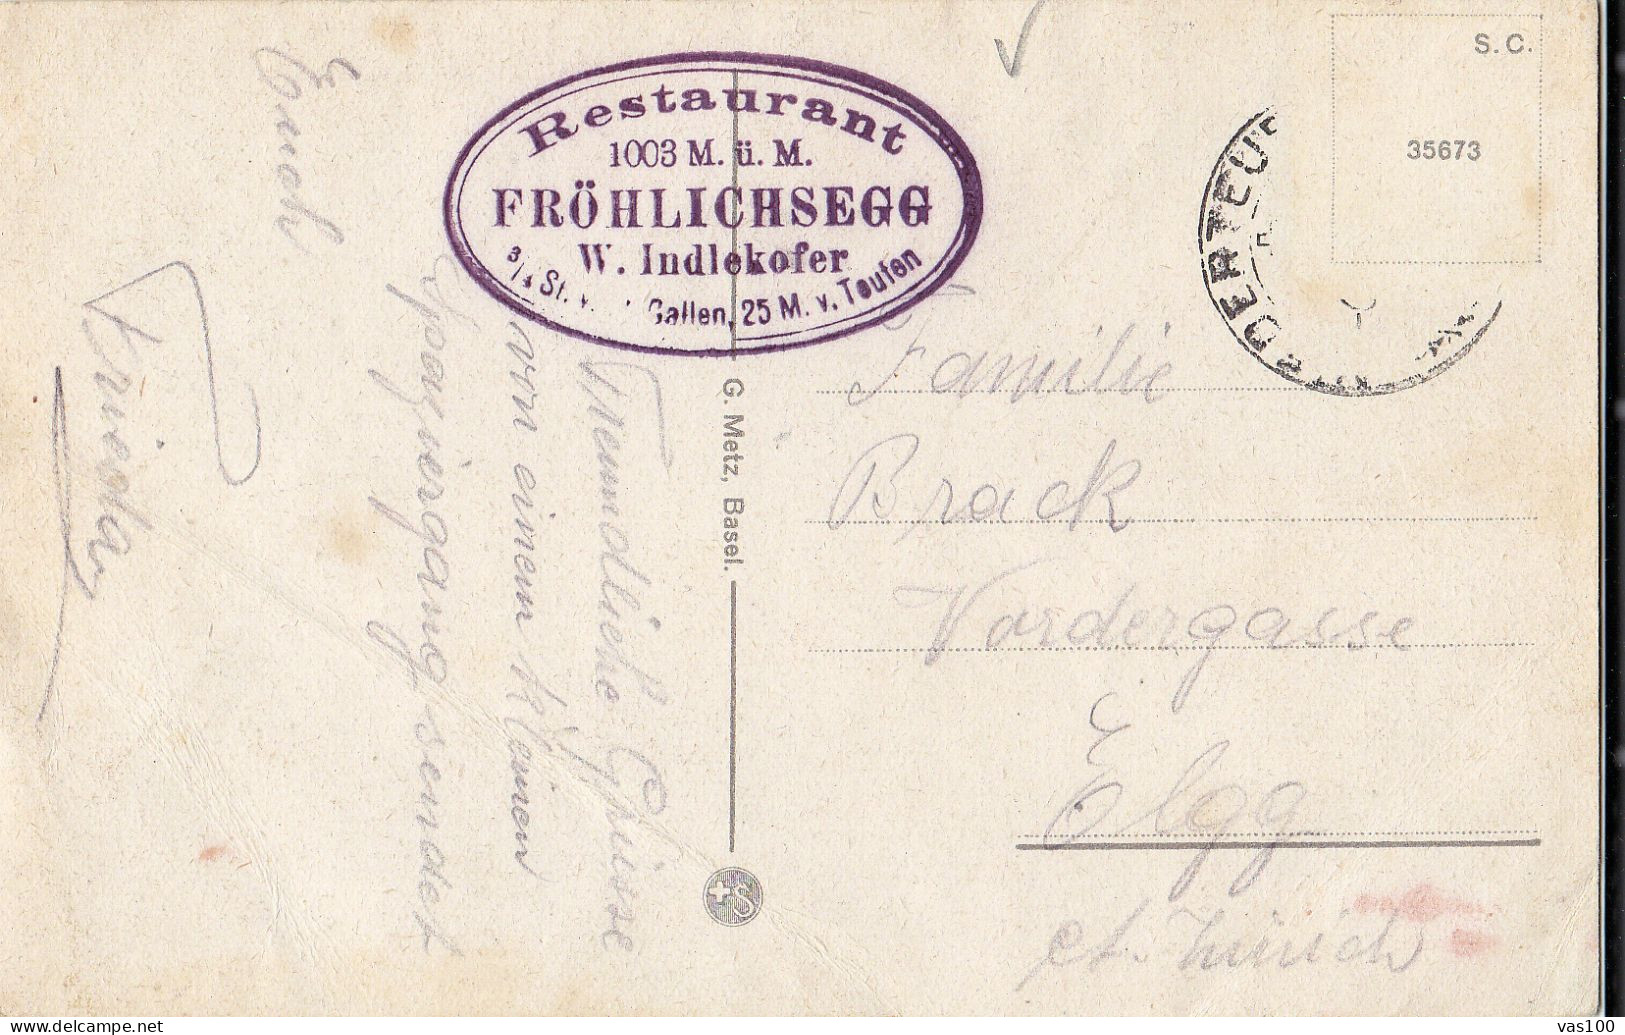 Restaurant Fröhlichsegg Mit Bodensee Stempel- Teufen-  POST CARD VINTAGE - Teufen